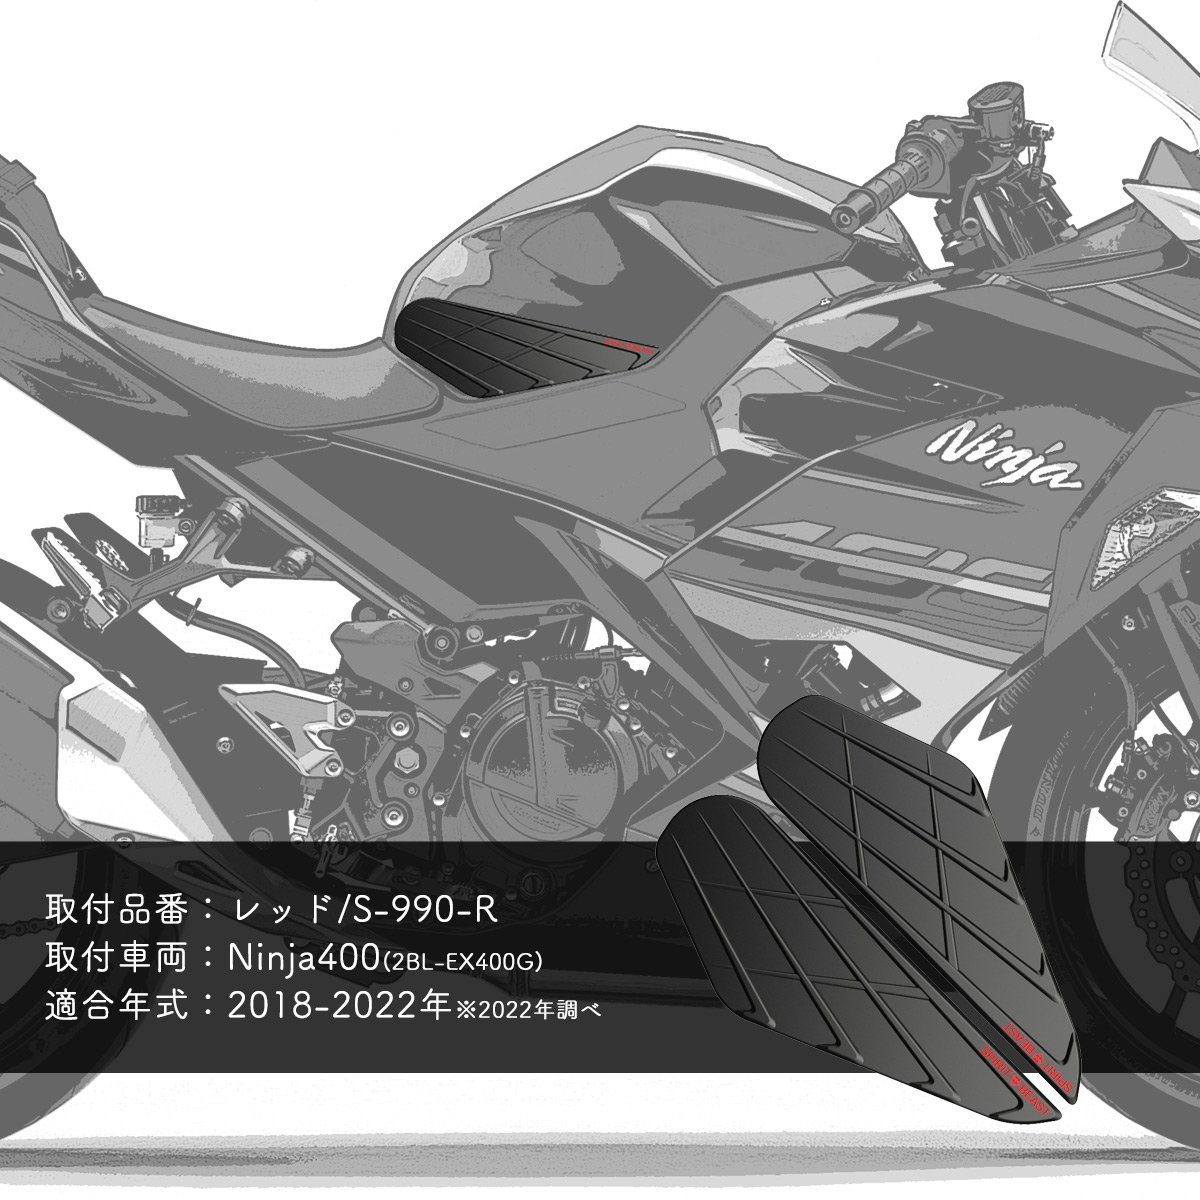 カワサキ Z400 Ninja400 ニンジャ400 ニーグリップパッド 2BL-EX400G 専用 赤文字 タンクパッド S-990Rの画像2